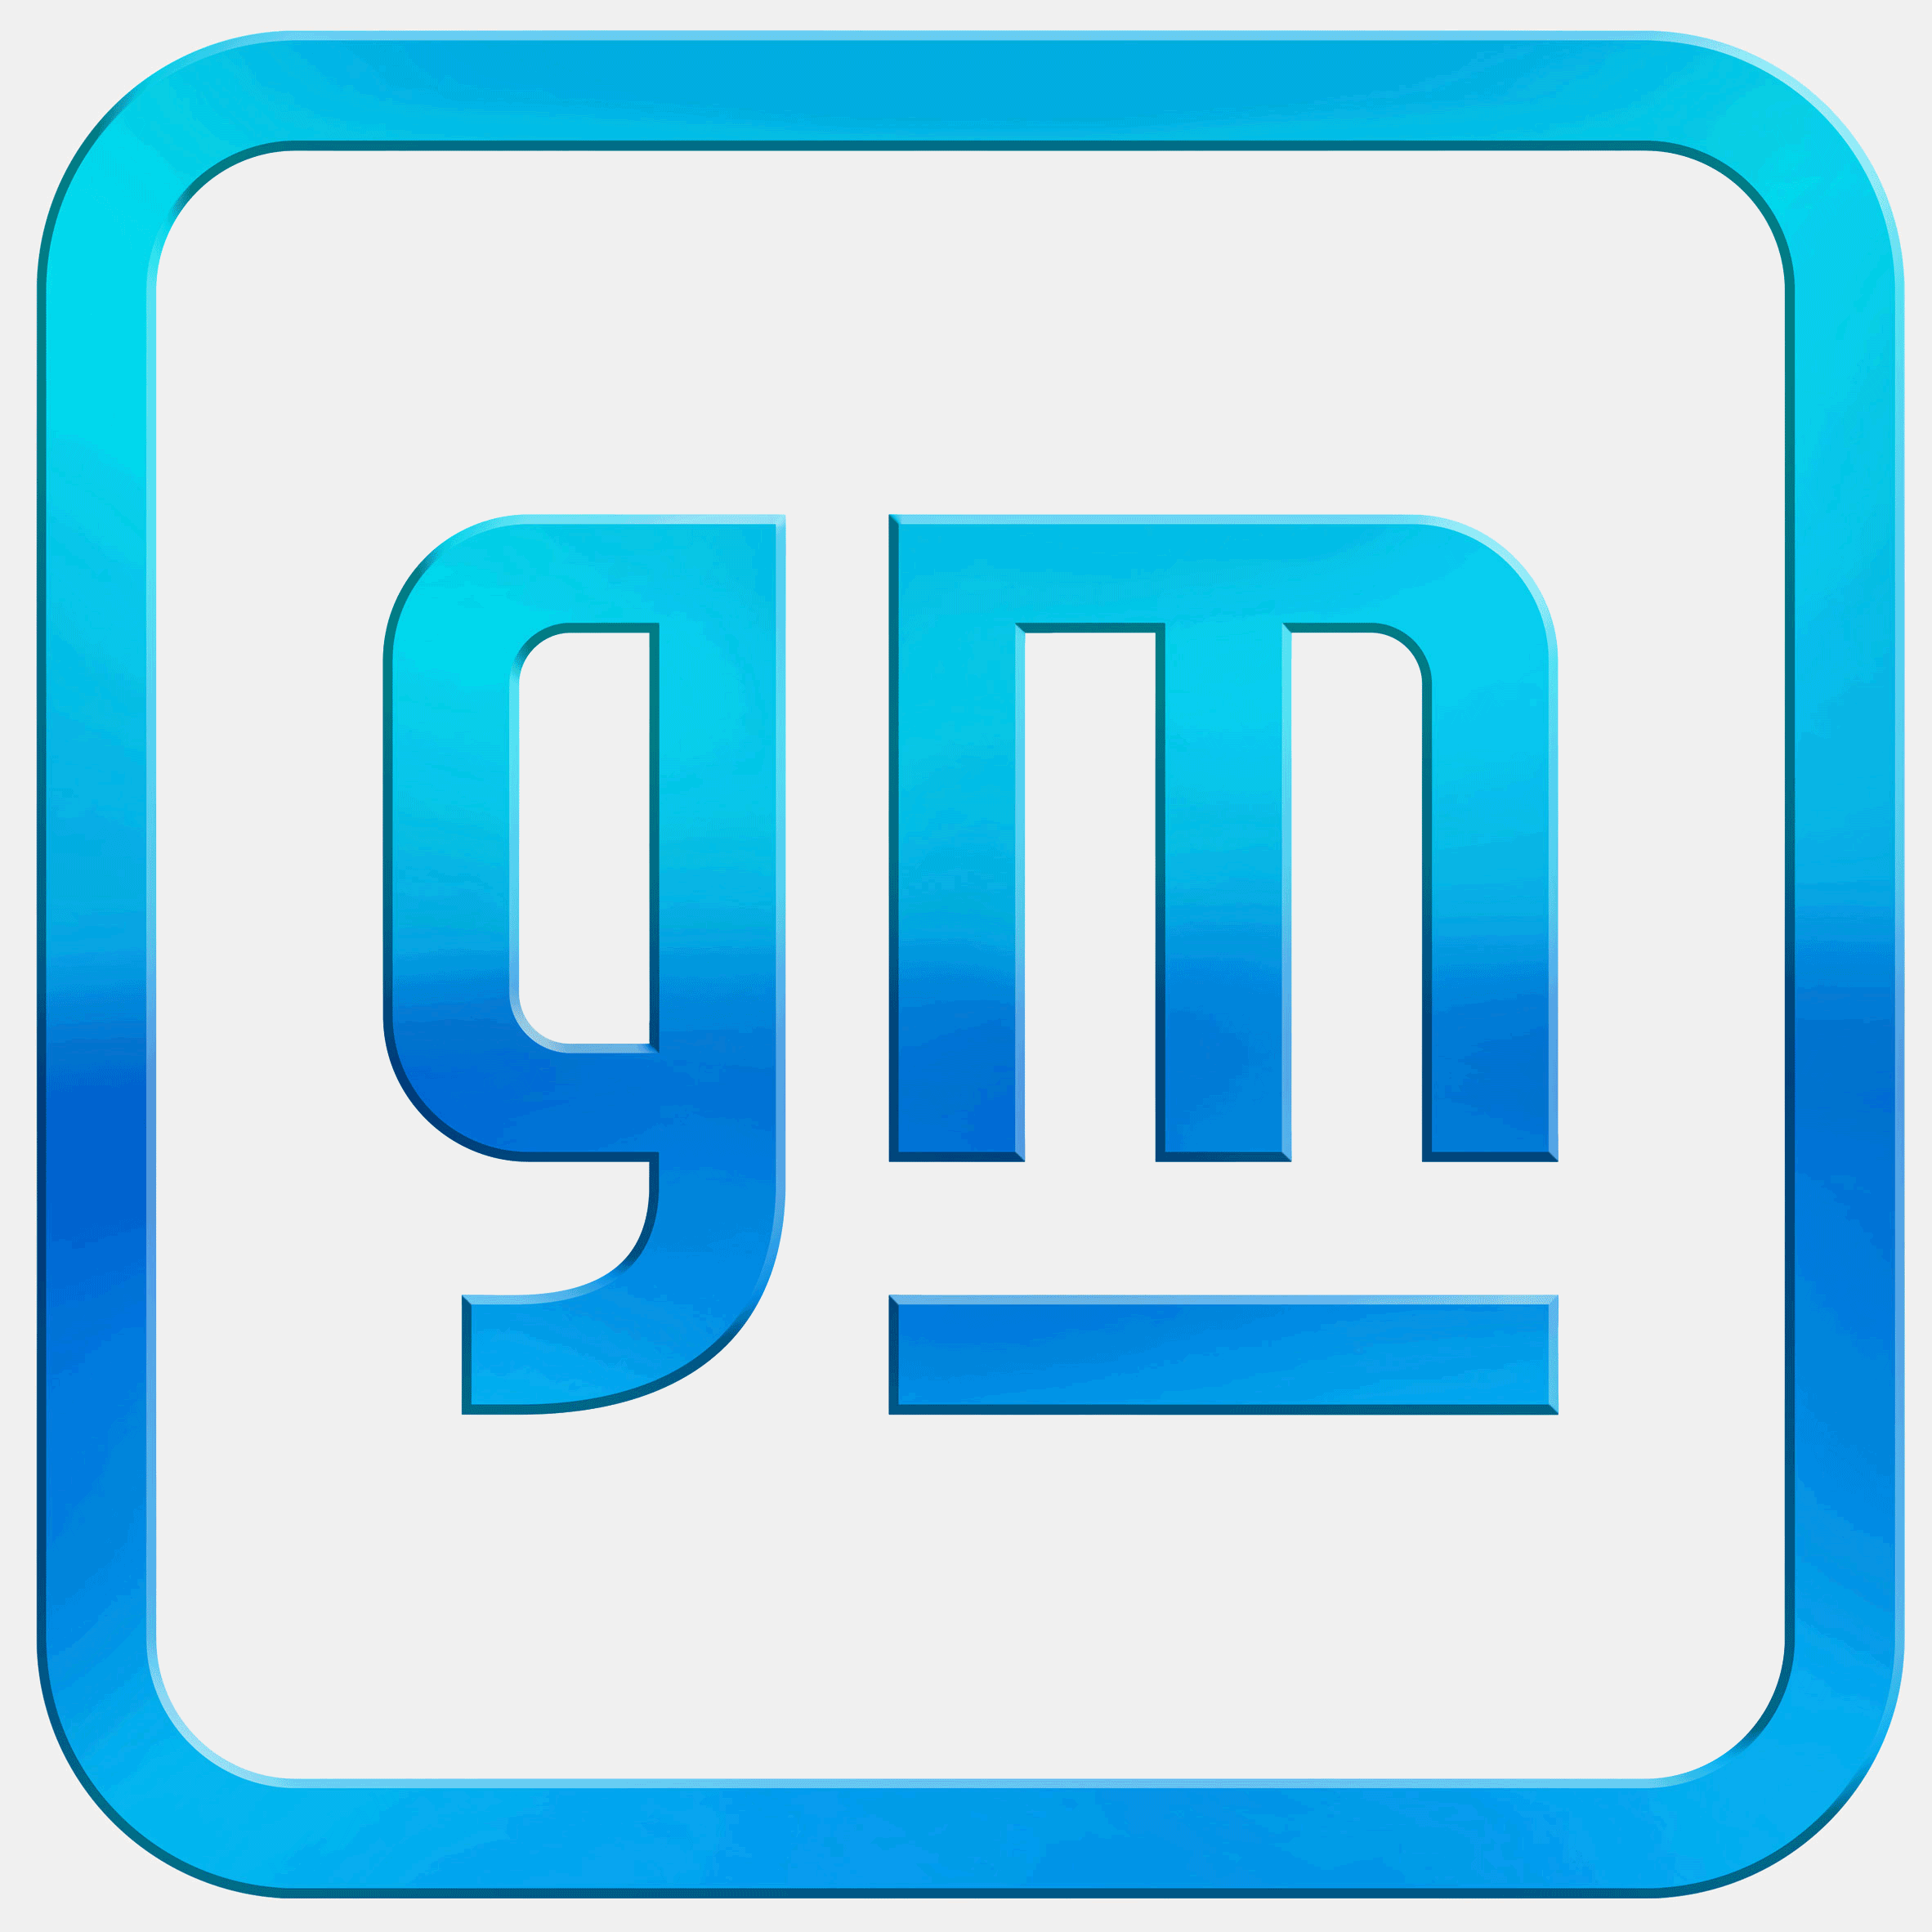 GM bất ngờ tung logo mới sau gần 60 năm, bắt đầu kế hoạch trở lại và đánh chiếm mọi phân khúc